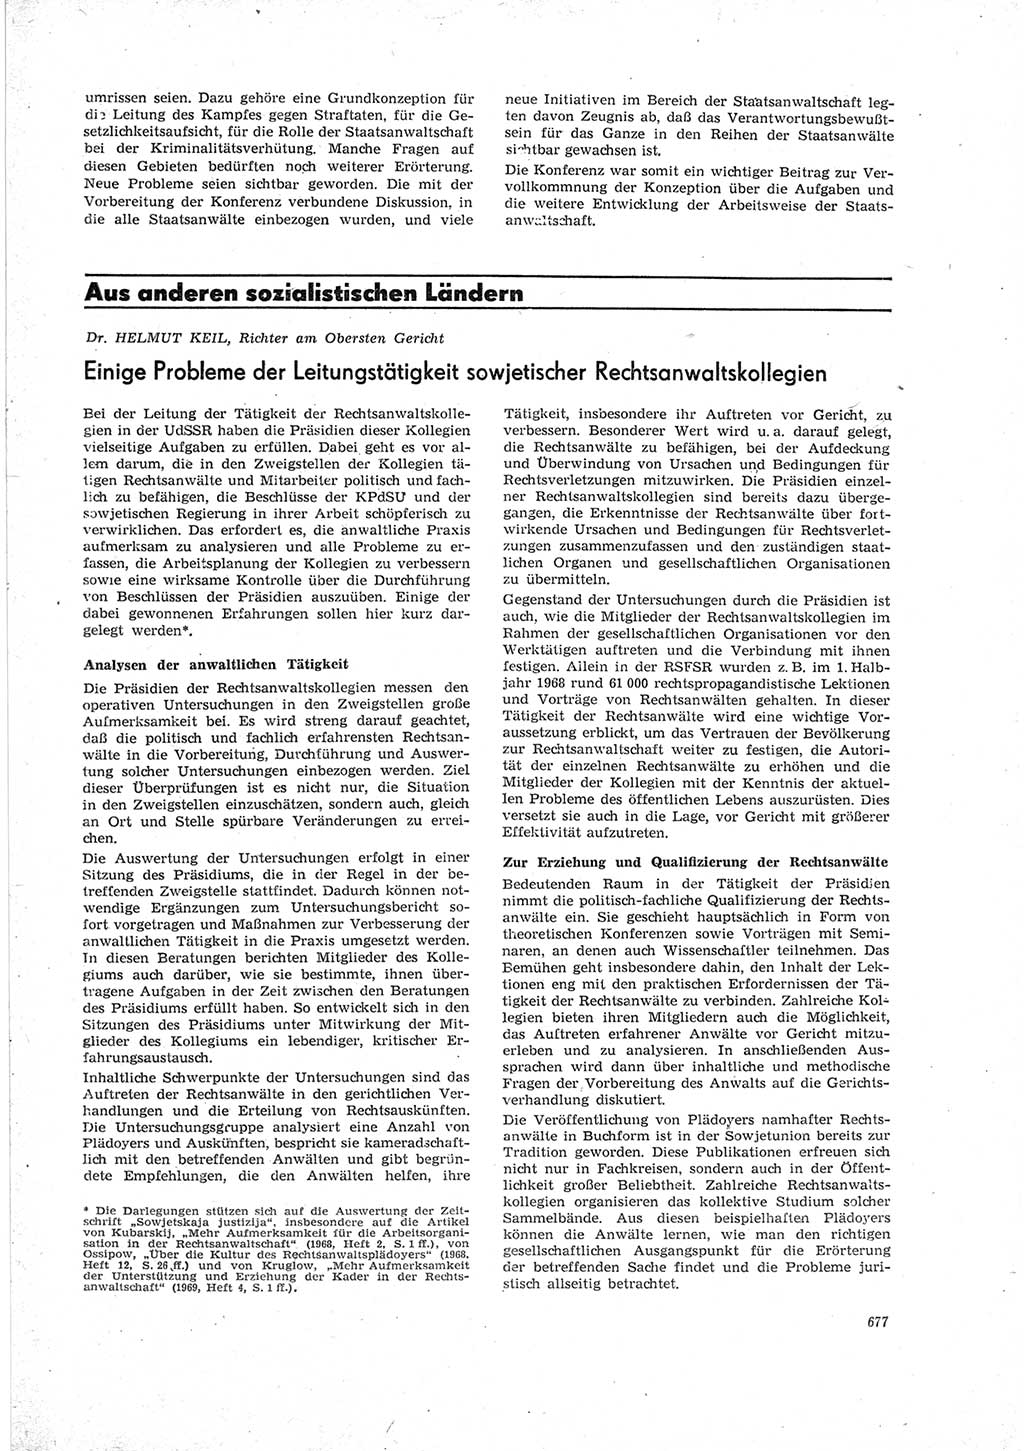 Neue Justiz (NJ), Zeitschrift für Recht und Rechtswissenschaft [Deutsche Demokratische Republik (DDR)], 23. Jahrgang 1969, Seite 677 (NJ DDR 1969, S. 677)